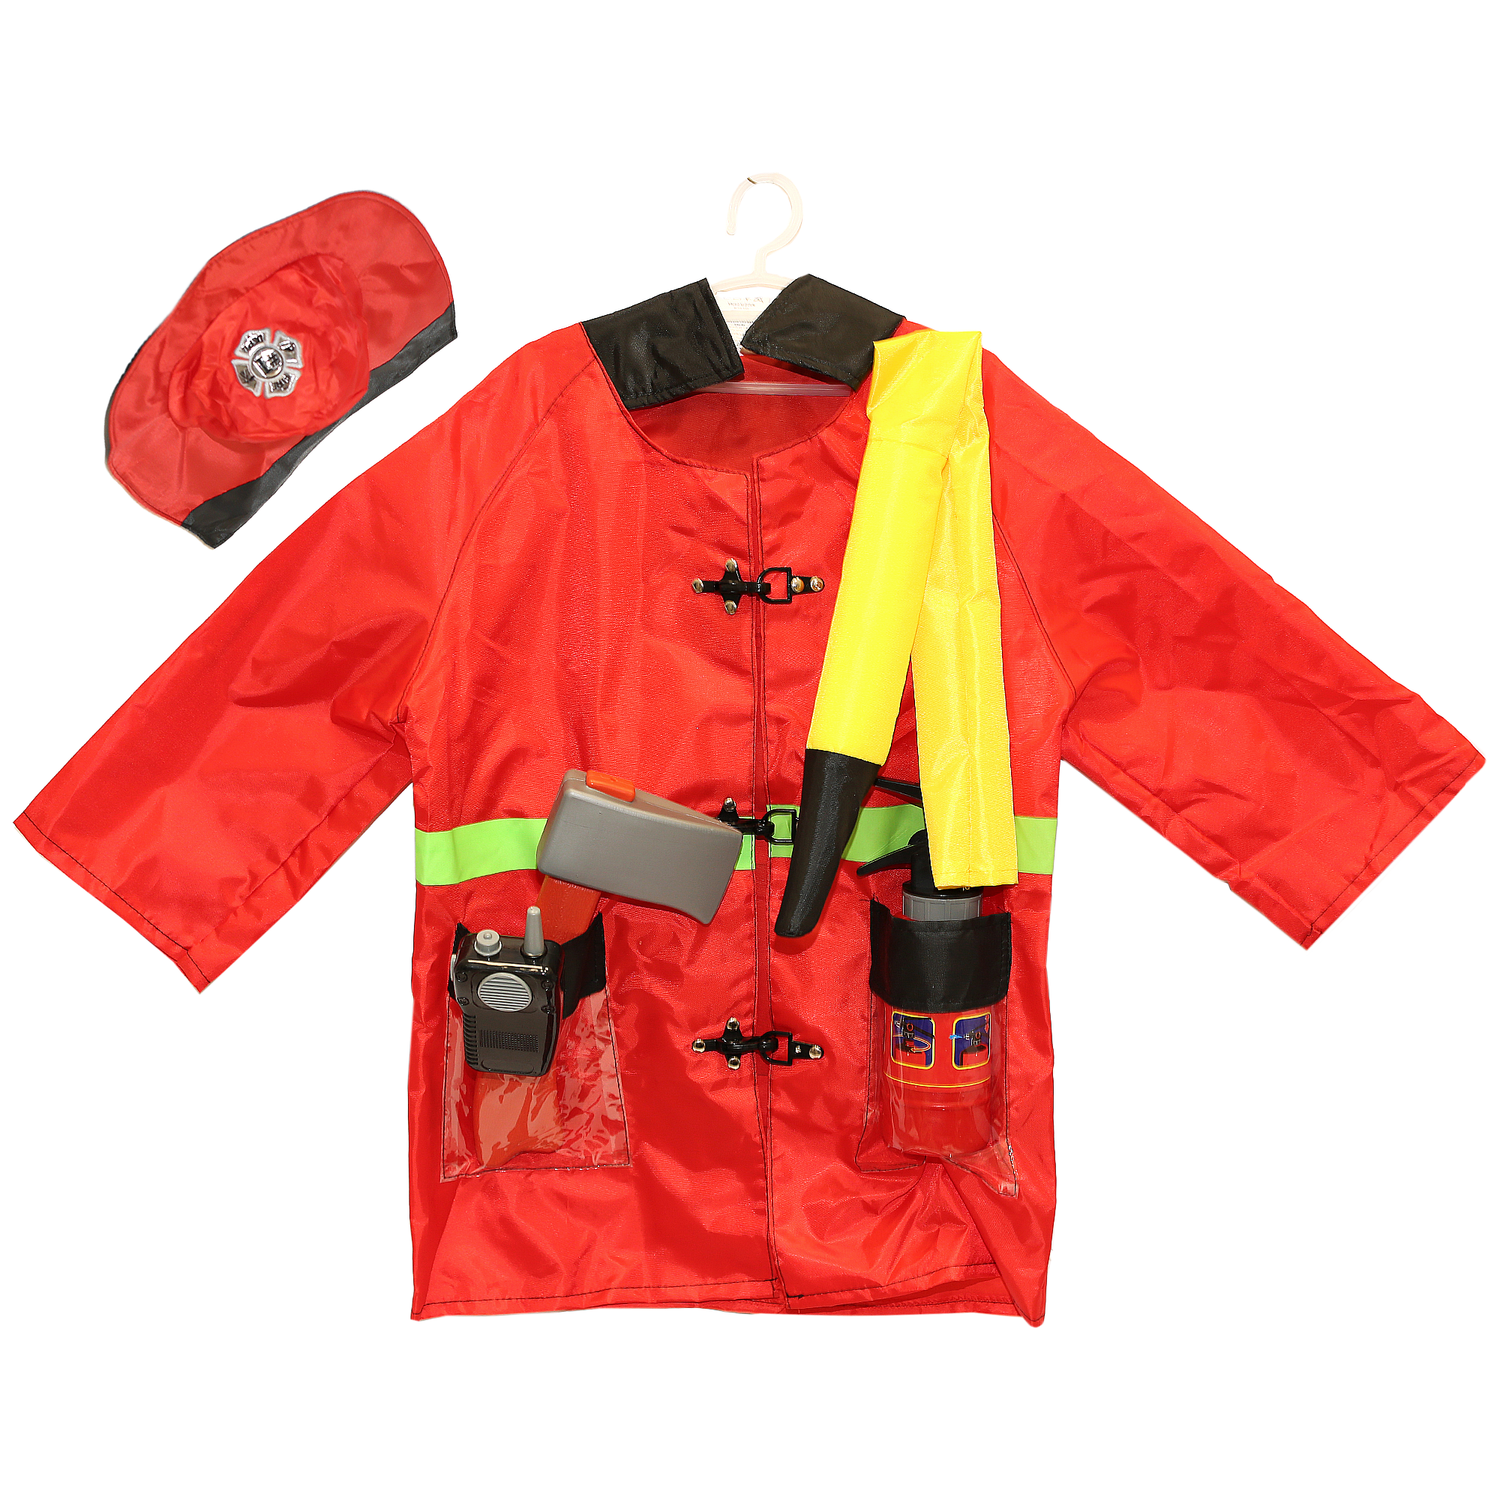 Игровой костюм Пожарный SHARKTOYS карнавальный костюм с аксессуарами от 3 до 8 лет 1000000070 - фото 1